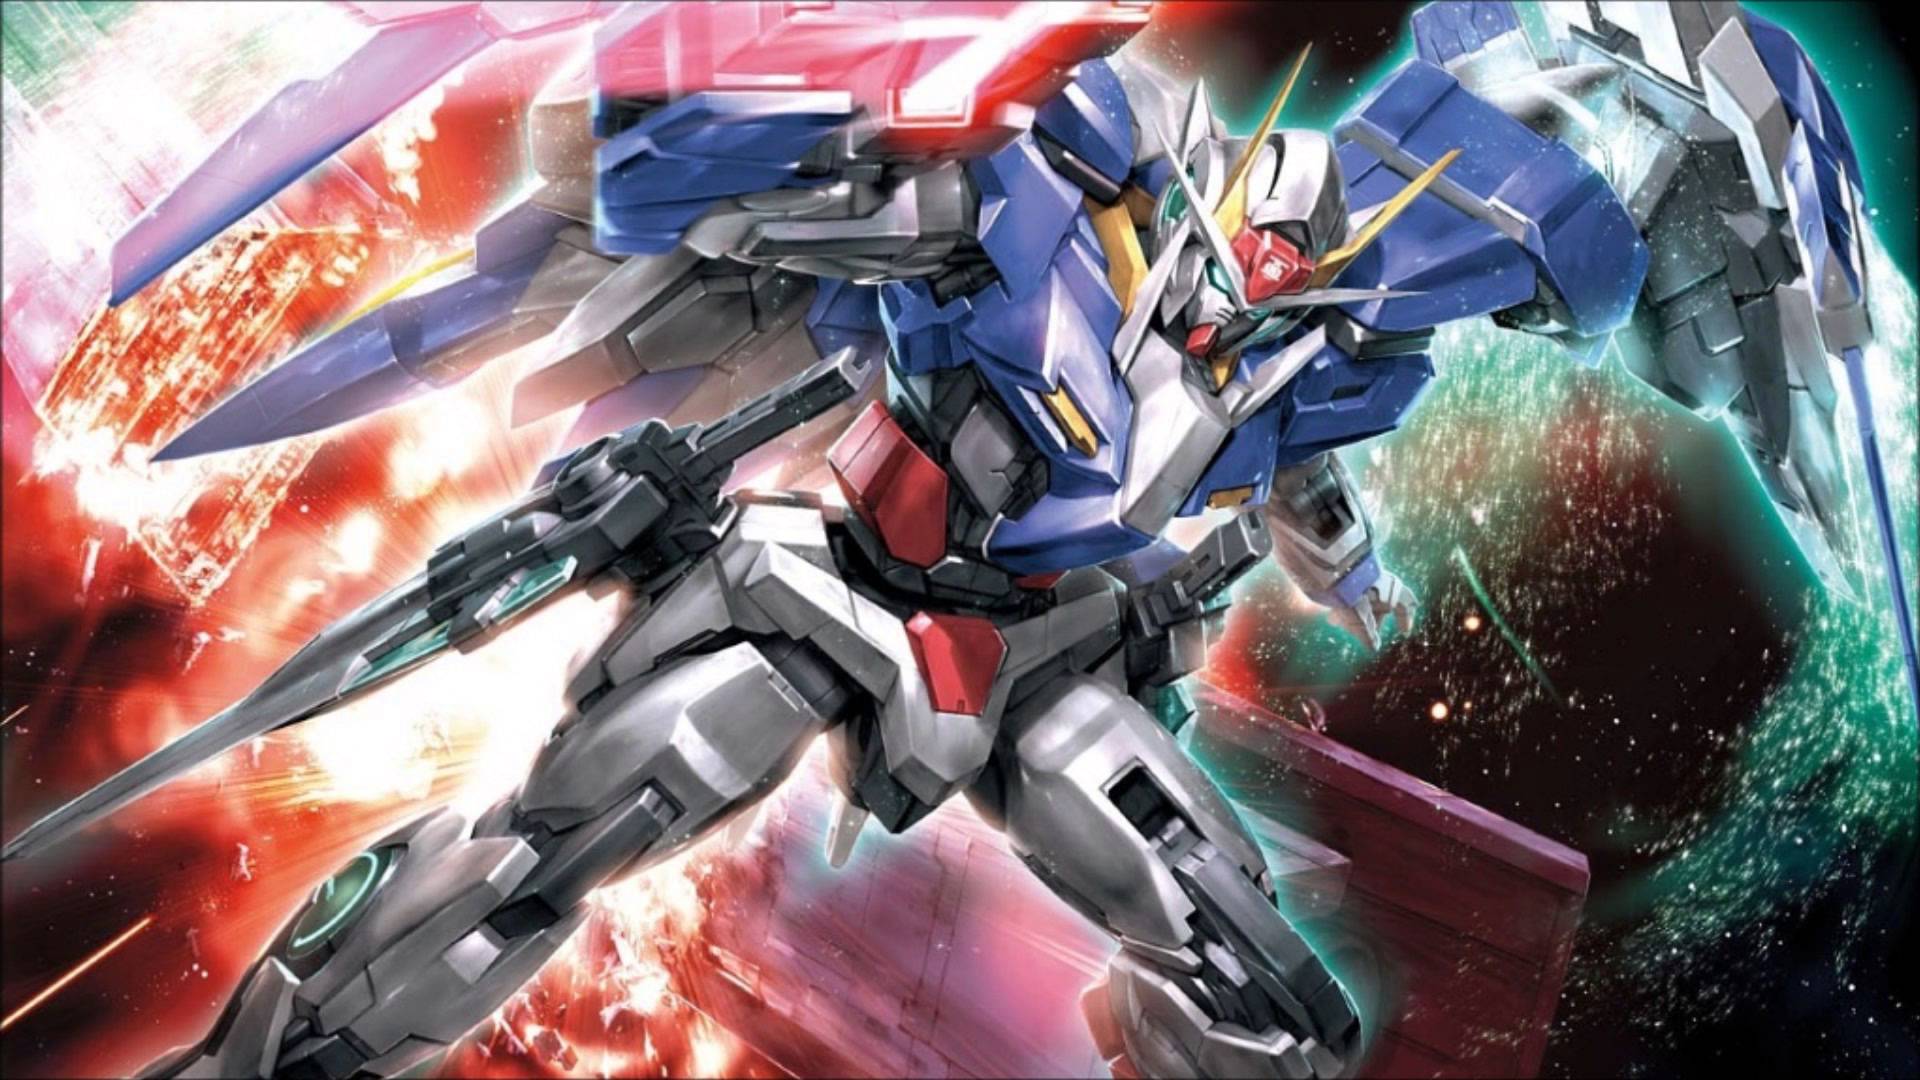 Bạn đang muốn tìm kiếm các Gundam Wallpapers 1080p để trang trí cho máy tính hoặc màn hình chiếc điện thoại của mình? Những bức hình với chất lượng cao và đầy đủ màu sắc sẽ giúp bạn tạo ra không gian làm việc và giải trí tuyệt vời. 38+ tùy chọn chắc chắn sẽ khiến bạn lựa chọn một bức hình ưng ý.